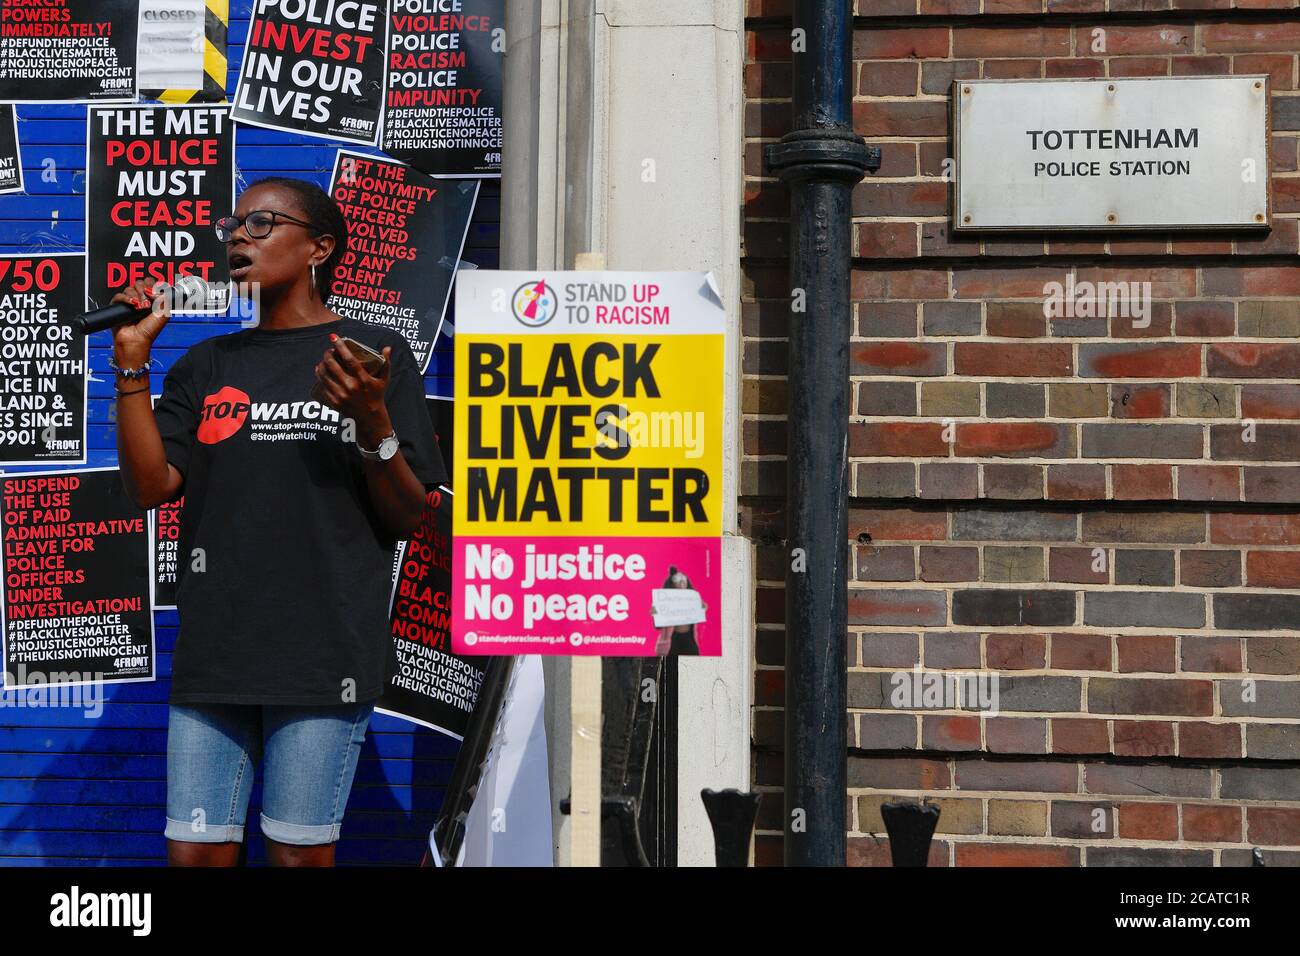 Tottenham - London (UK), 8. August 2020: Eine Koalition von Aktivistengruppen Kundgebung vor der Tottenham Polizeistation Polizei Rassismus und Gewalt. Stockfoto